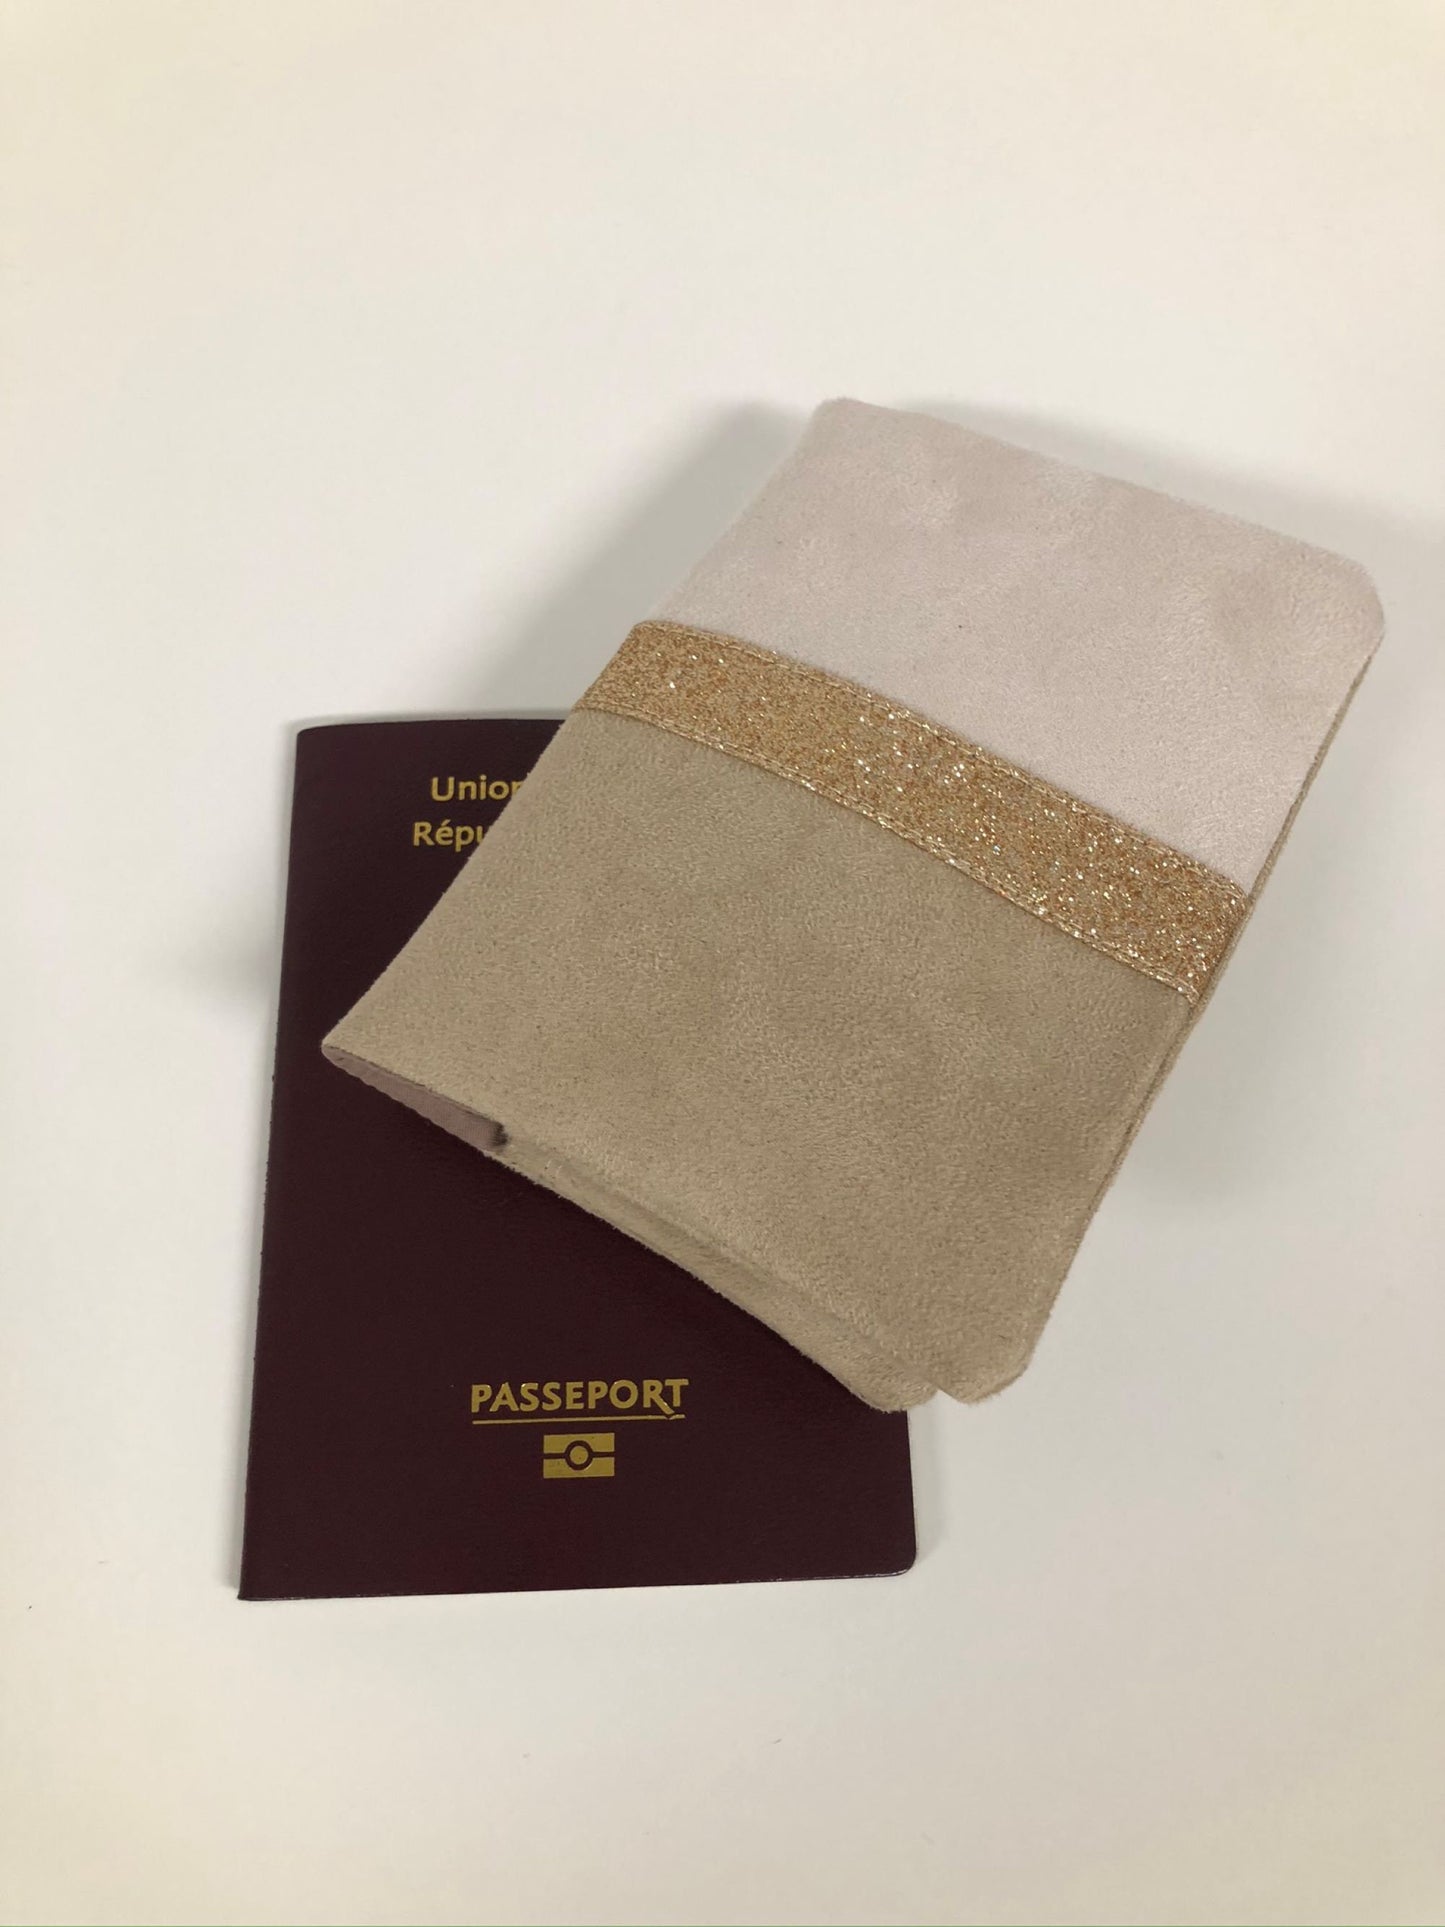 Le protège-passeport écru et beige à paillettes dorées